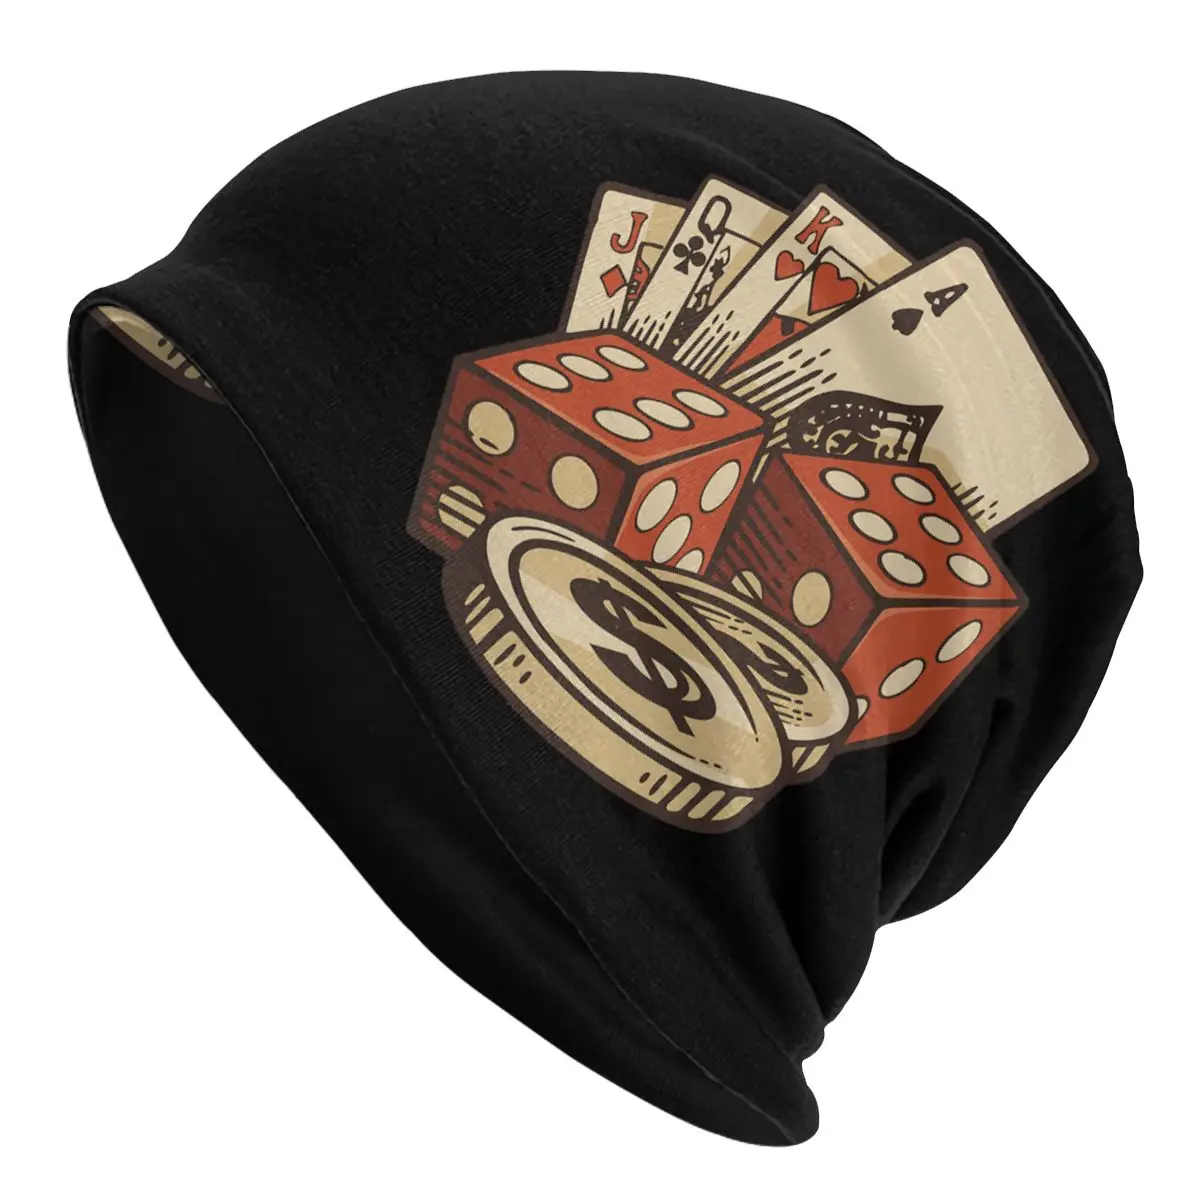 

Покер-карты-чипы-казино-азартные игры-карты-подарок-Томас-Ларч для мужчин и женщин тонкая фонарик двухслойная тканевая шляпа